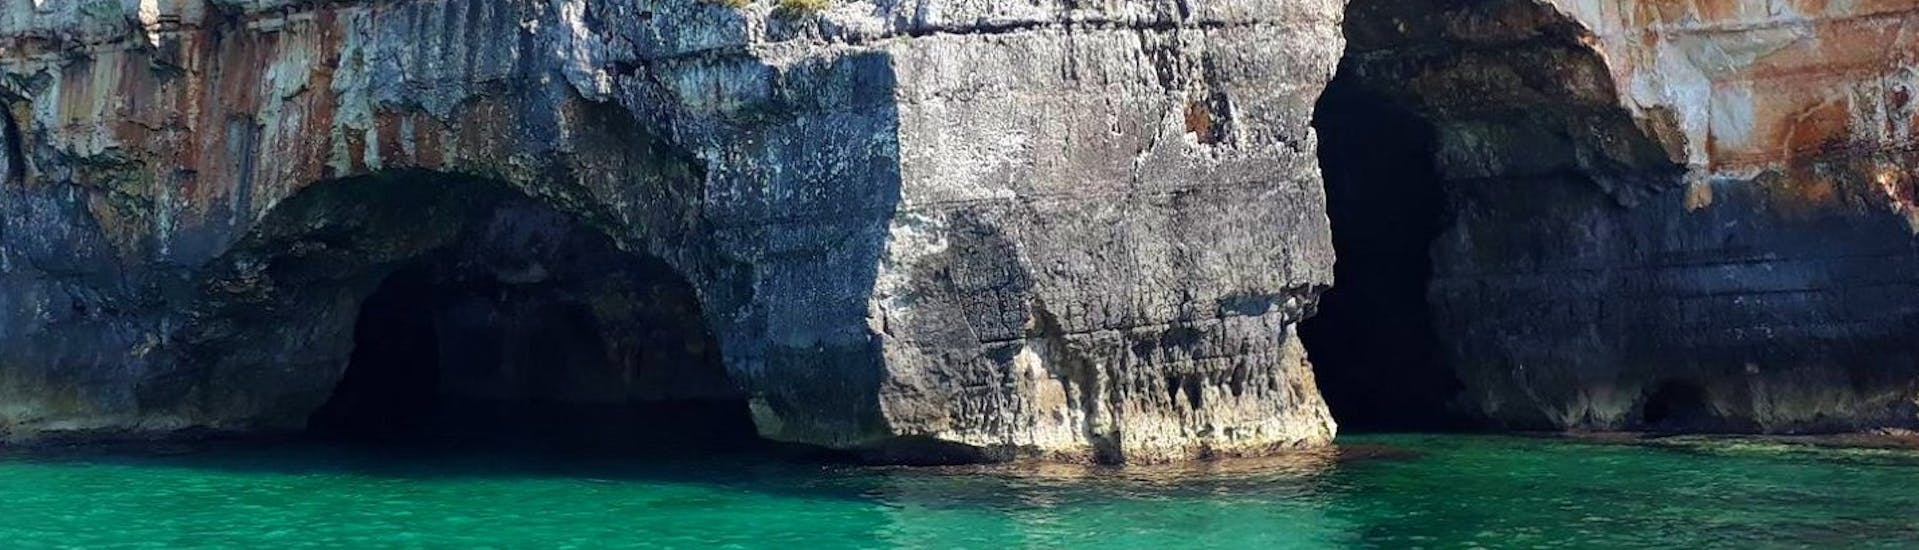 Beeld van de indrukwekkende Grotta delle Tre Porte genomen tijdens een bootverhuur in Torre Vado voor maximaal 6 personen met Rosa dei Venti Escursioni.